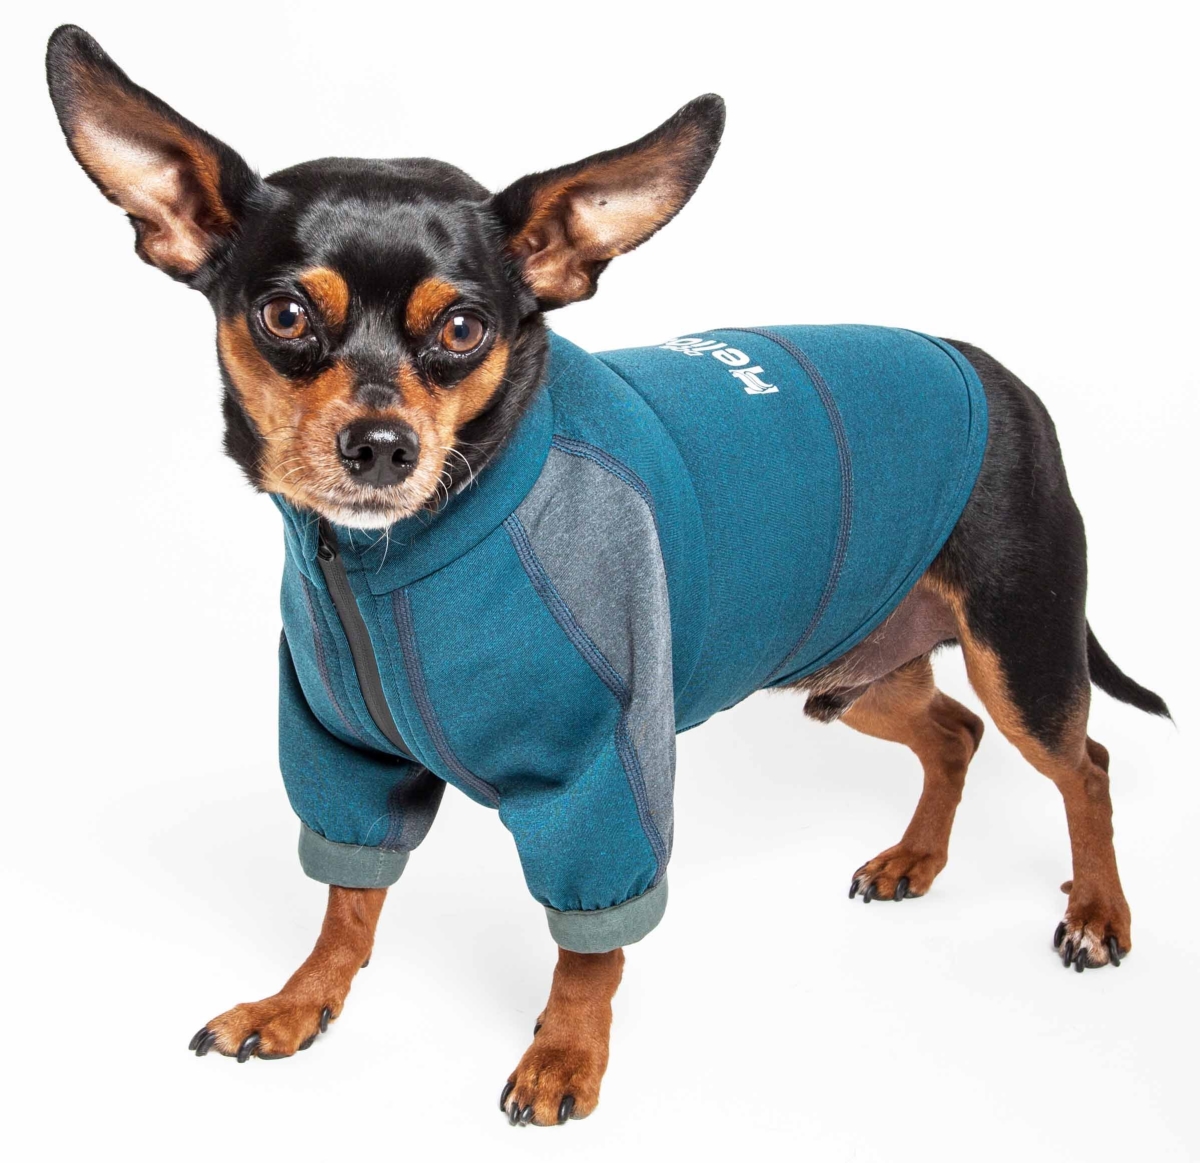 Tshl6blsm Eboneflow Mediumweight 4-way-stretch Flexible & Breathable Performance Dog Yoga T-shirt, Ocean Blue & Grey - Small